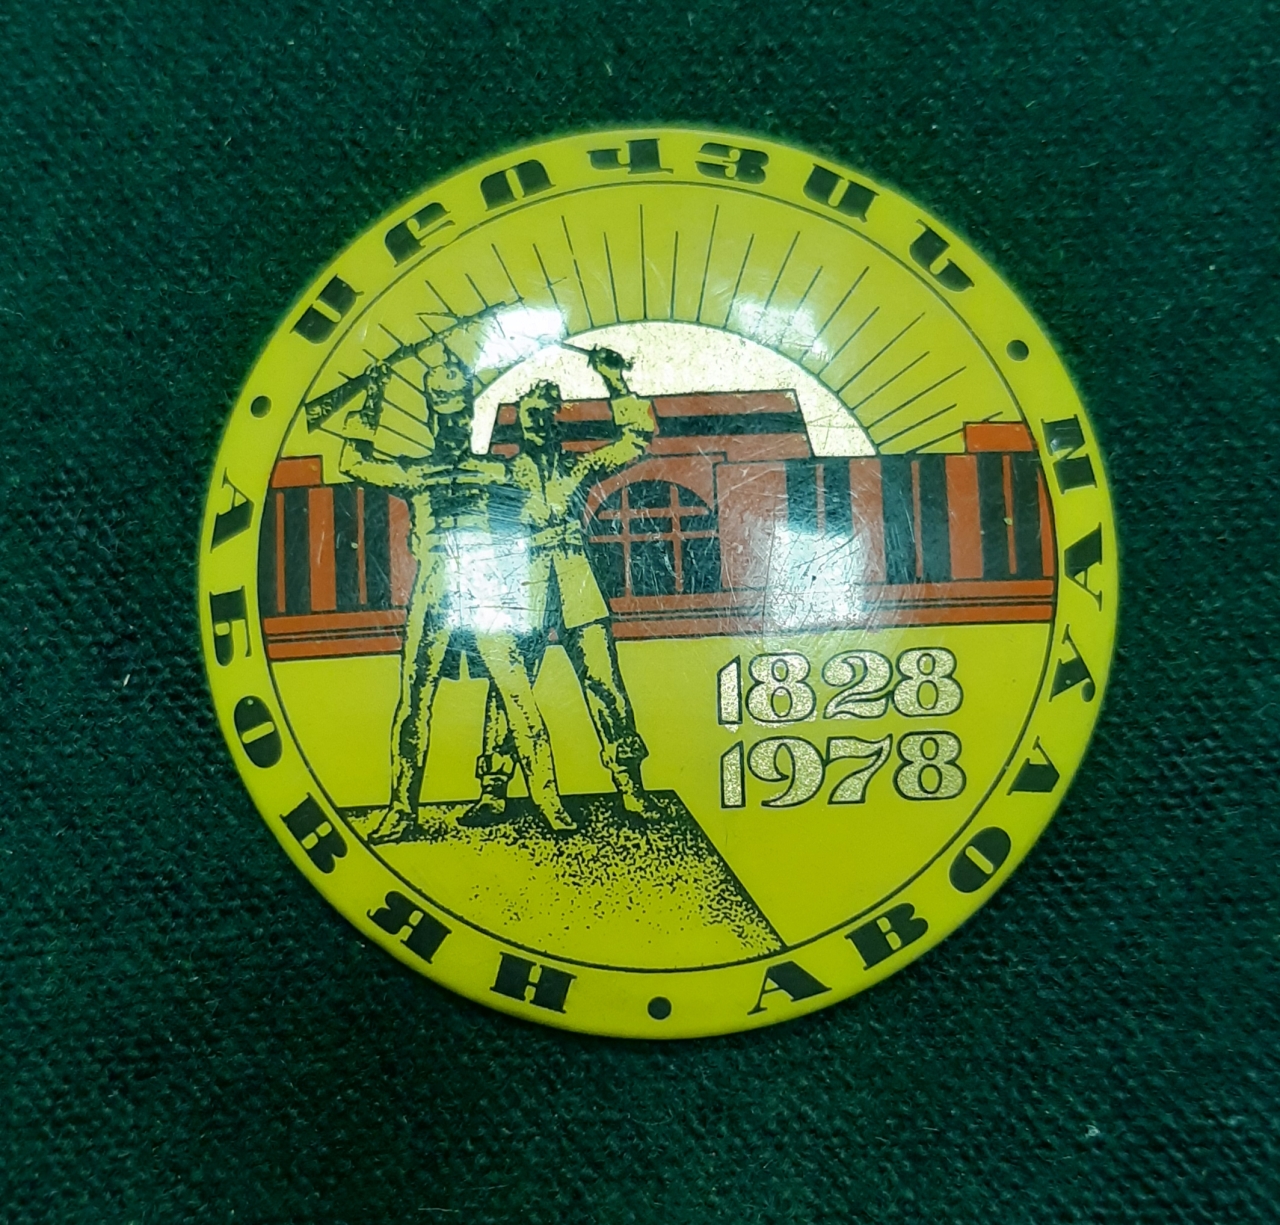 Կրծքանշան՝ նվիրված Աբովյան քաղաքի 150-ամյակին